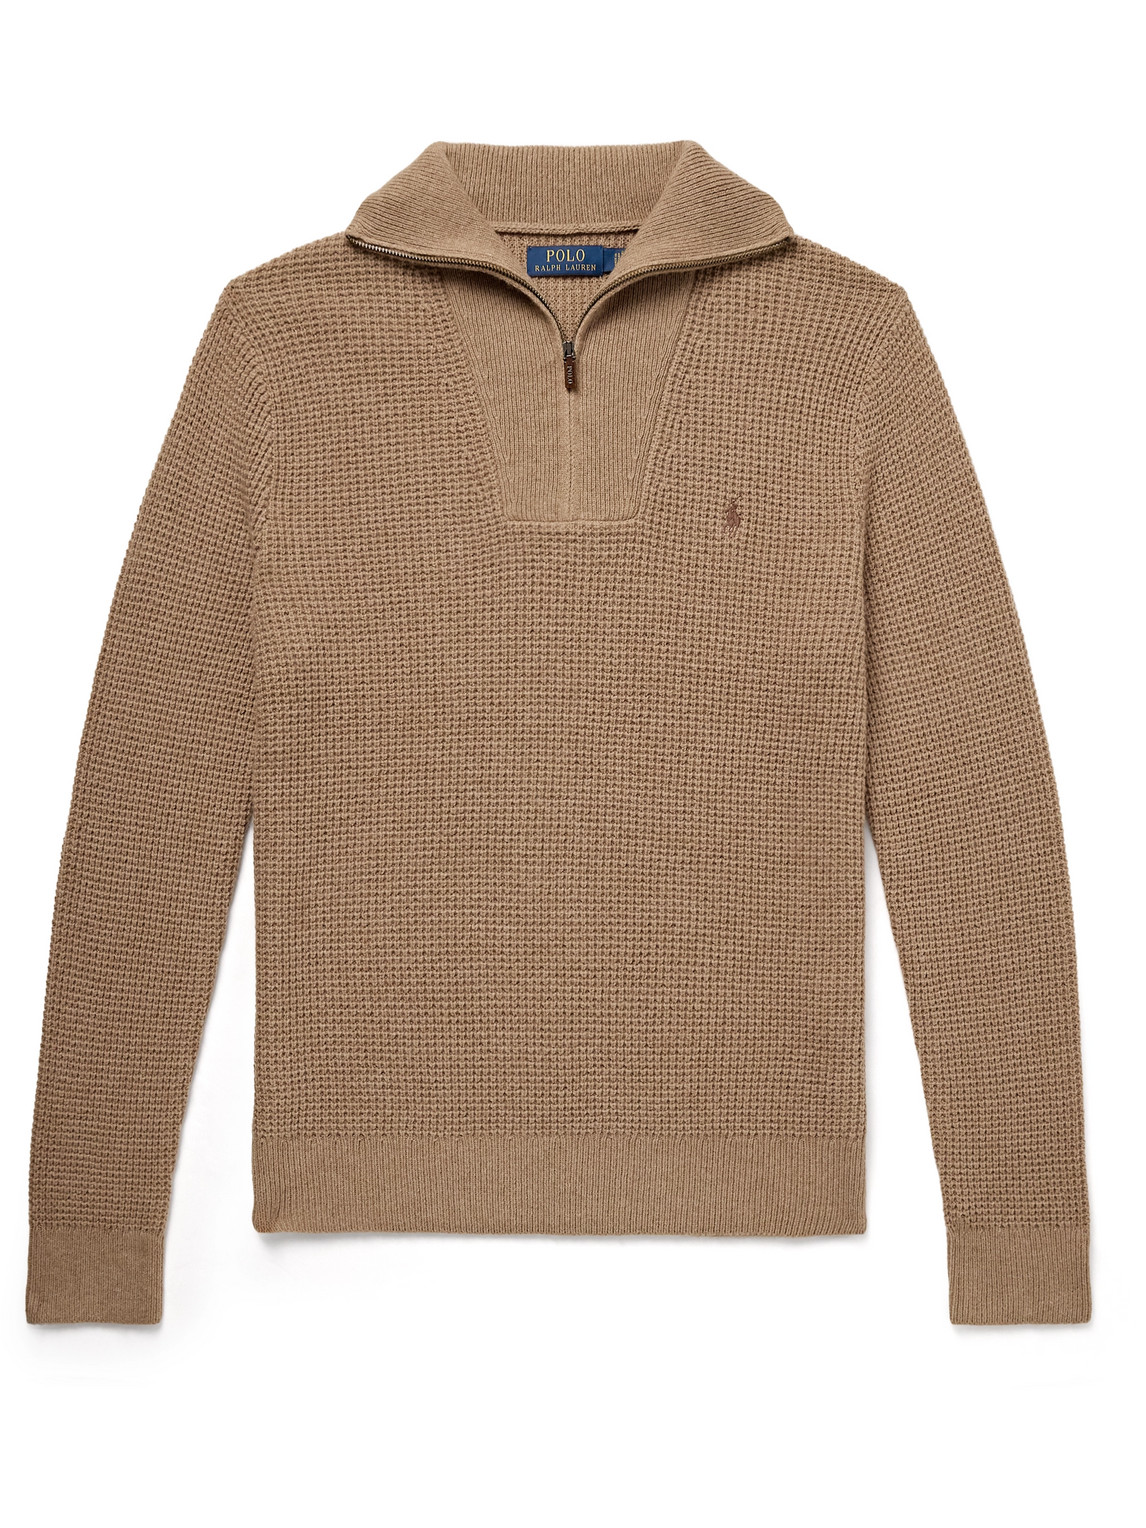 Polo Ralph Lauren - Logo-Embroidered Wool and Cotton-Blend Half-Zip Sweater - Men - Brown - L von Polo Ralph Lauren